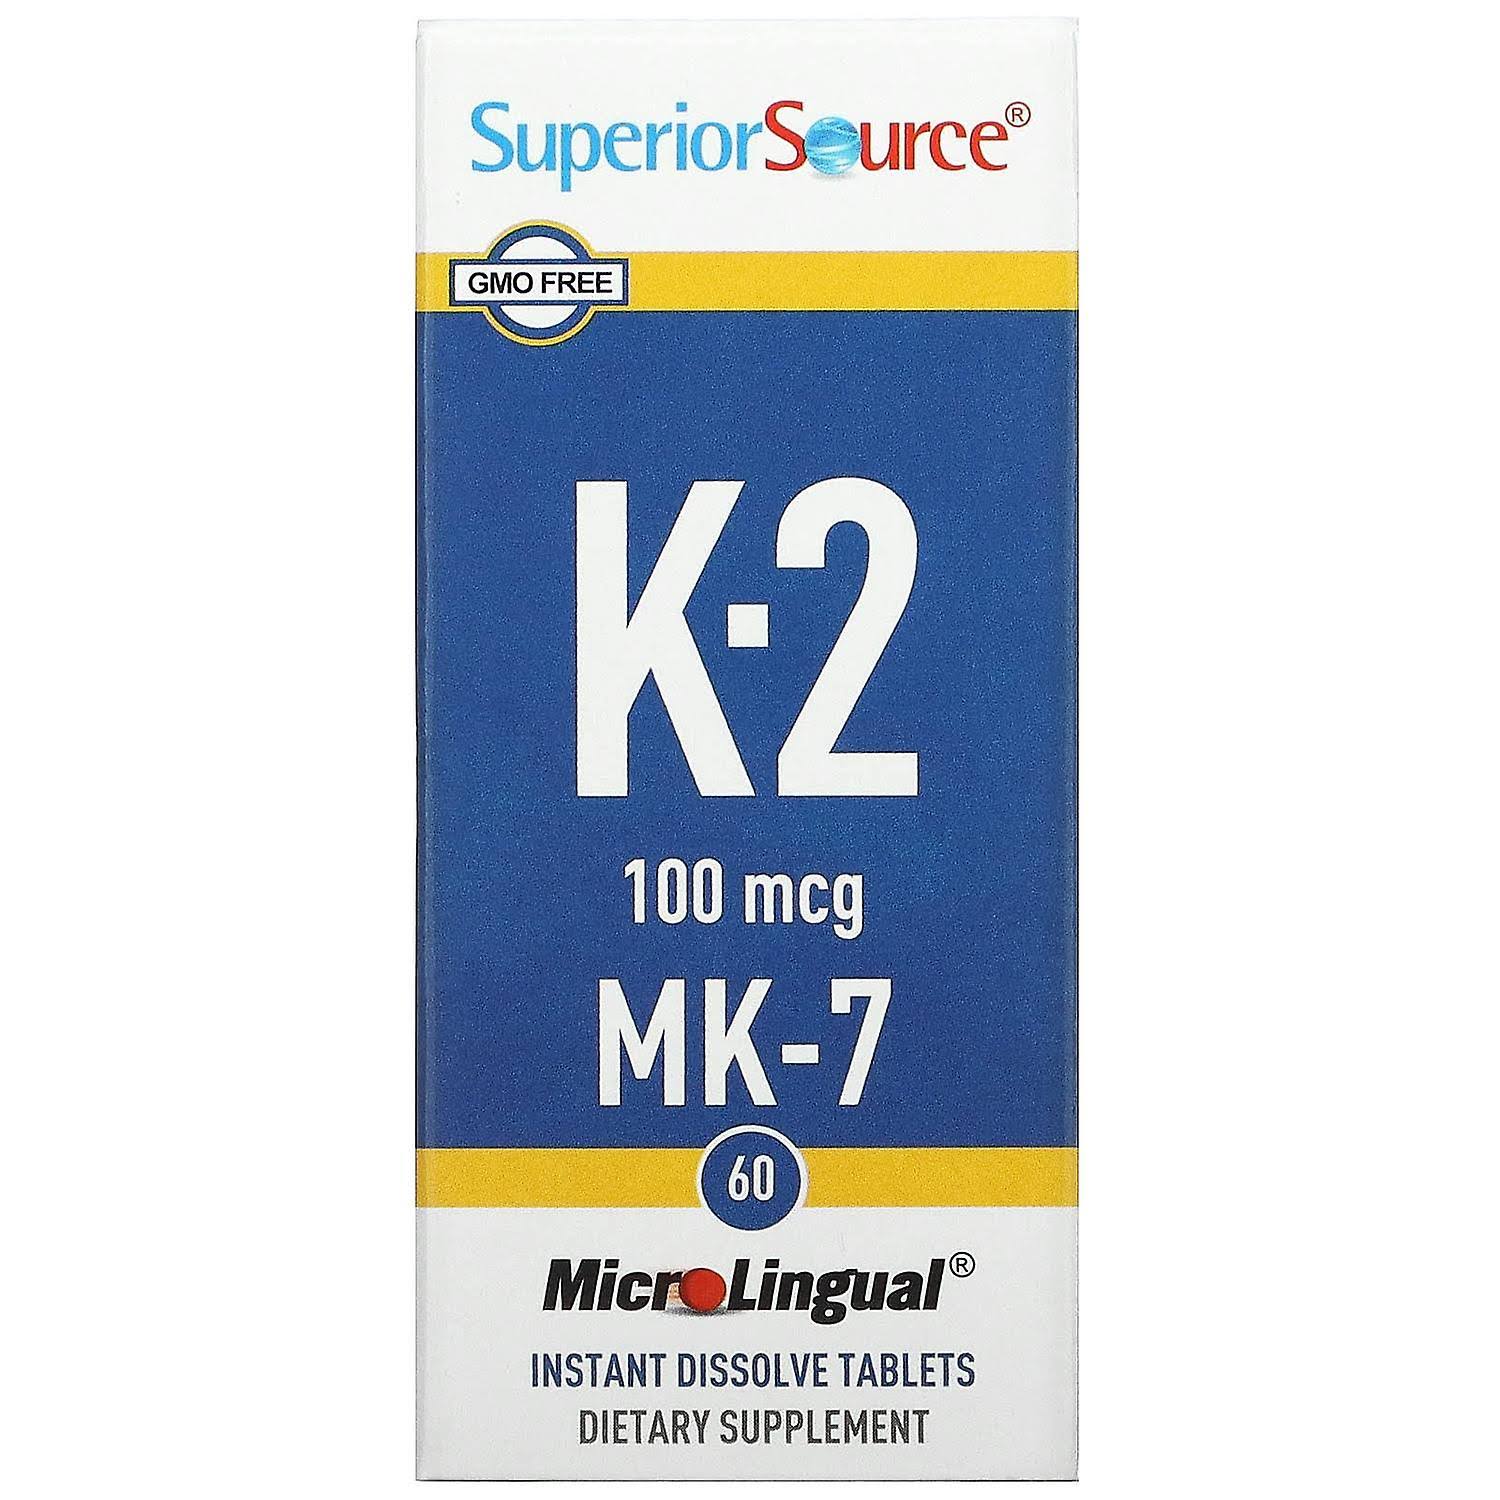 Superior Source Vitamin K2 MK7 Dietary Supplement - 100mcg, 60ct